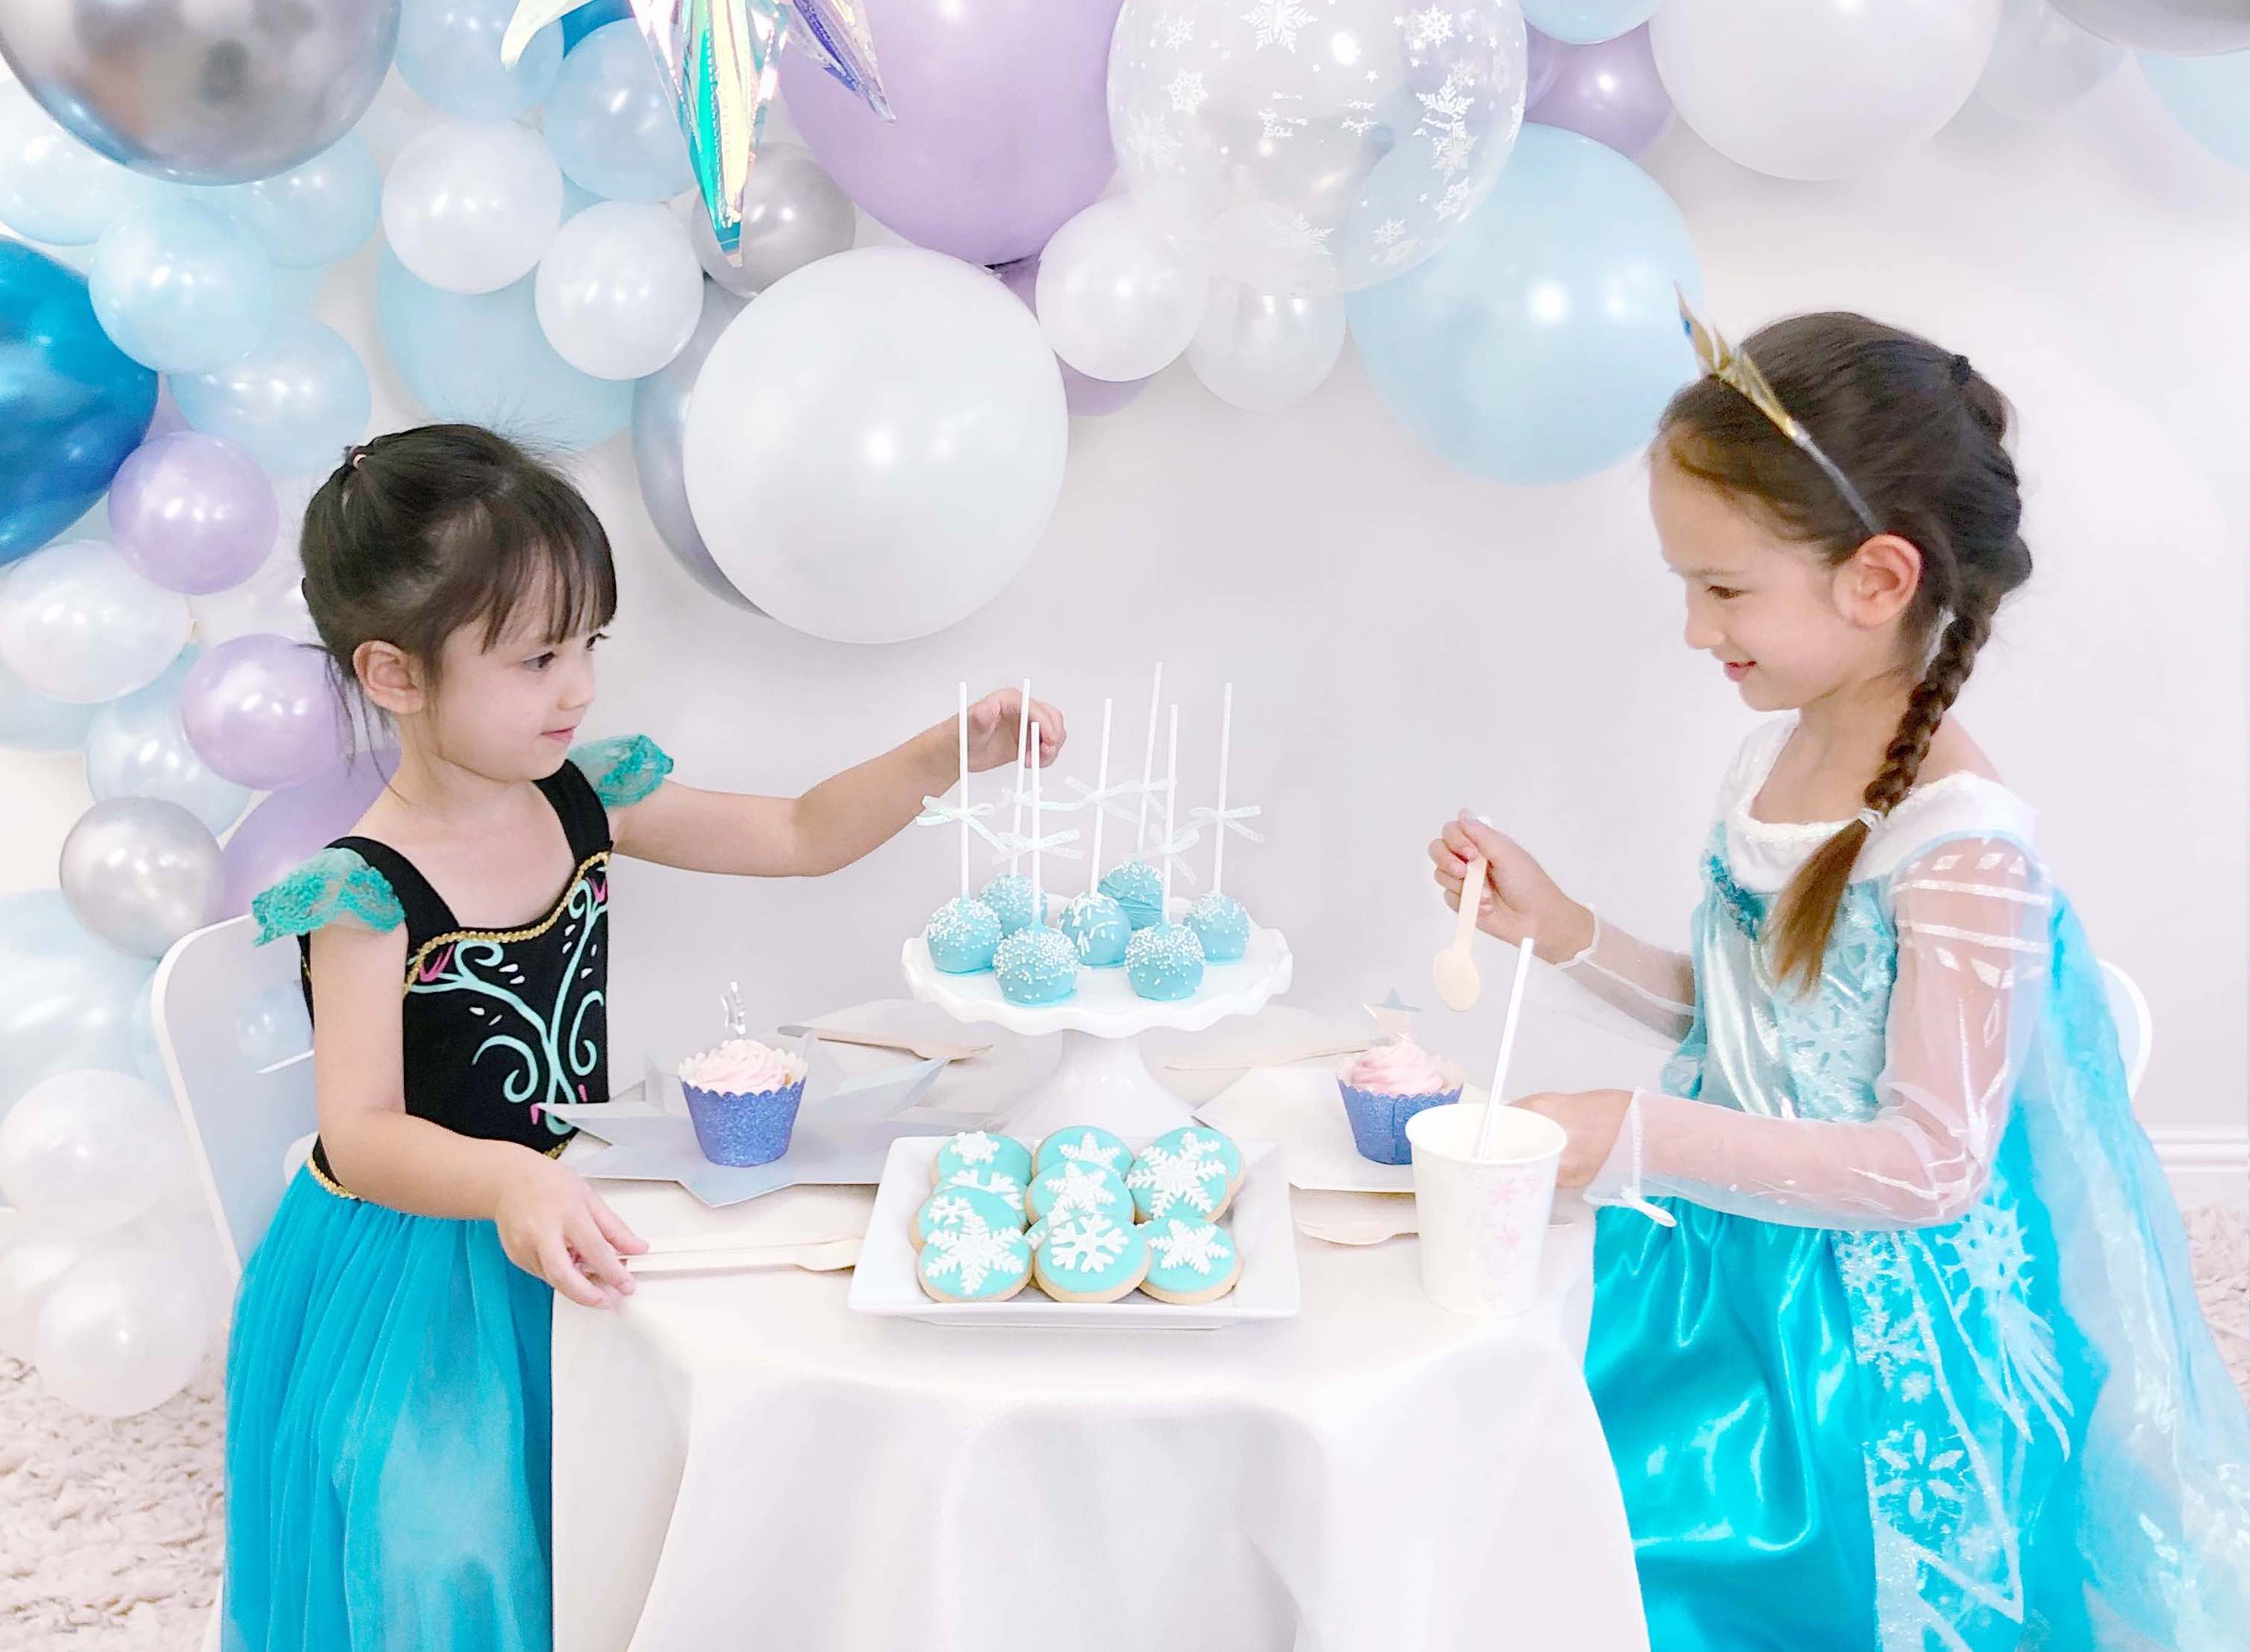 3 Pastel Happy Birthday Balloons, Pastel Birthday Decorations, Pastel Party  Decor, Girls Birthday Party Decorations, Double Layered Balloons